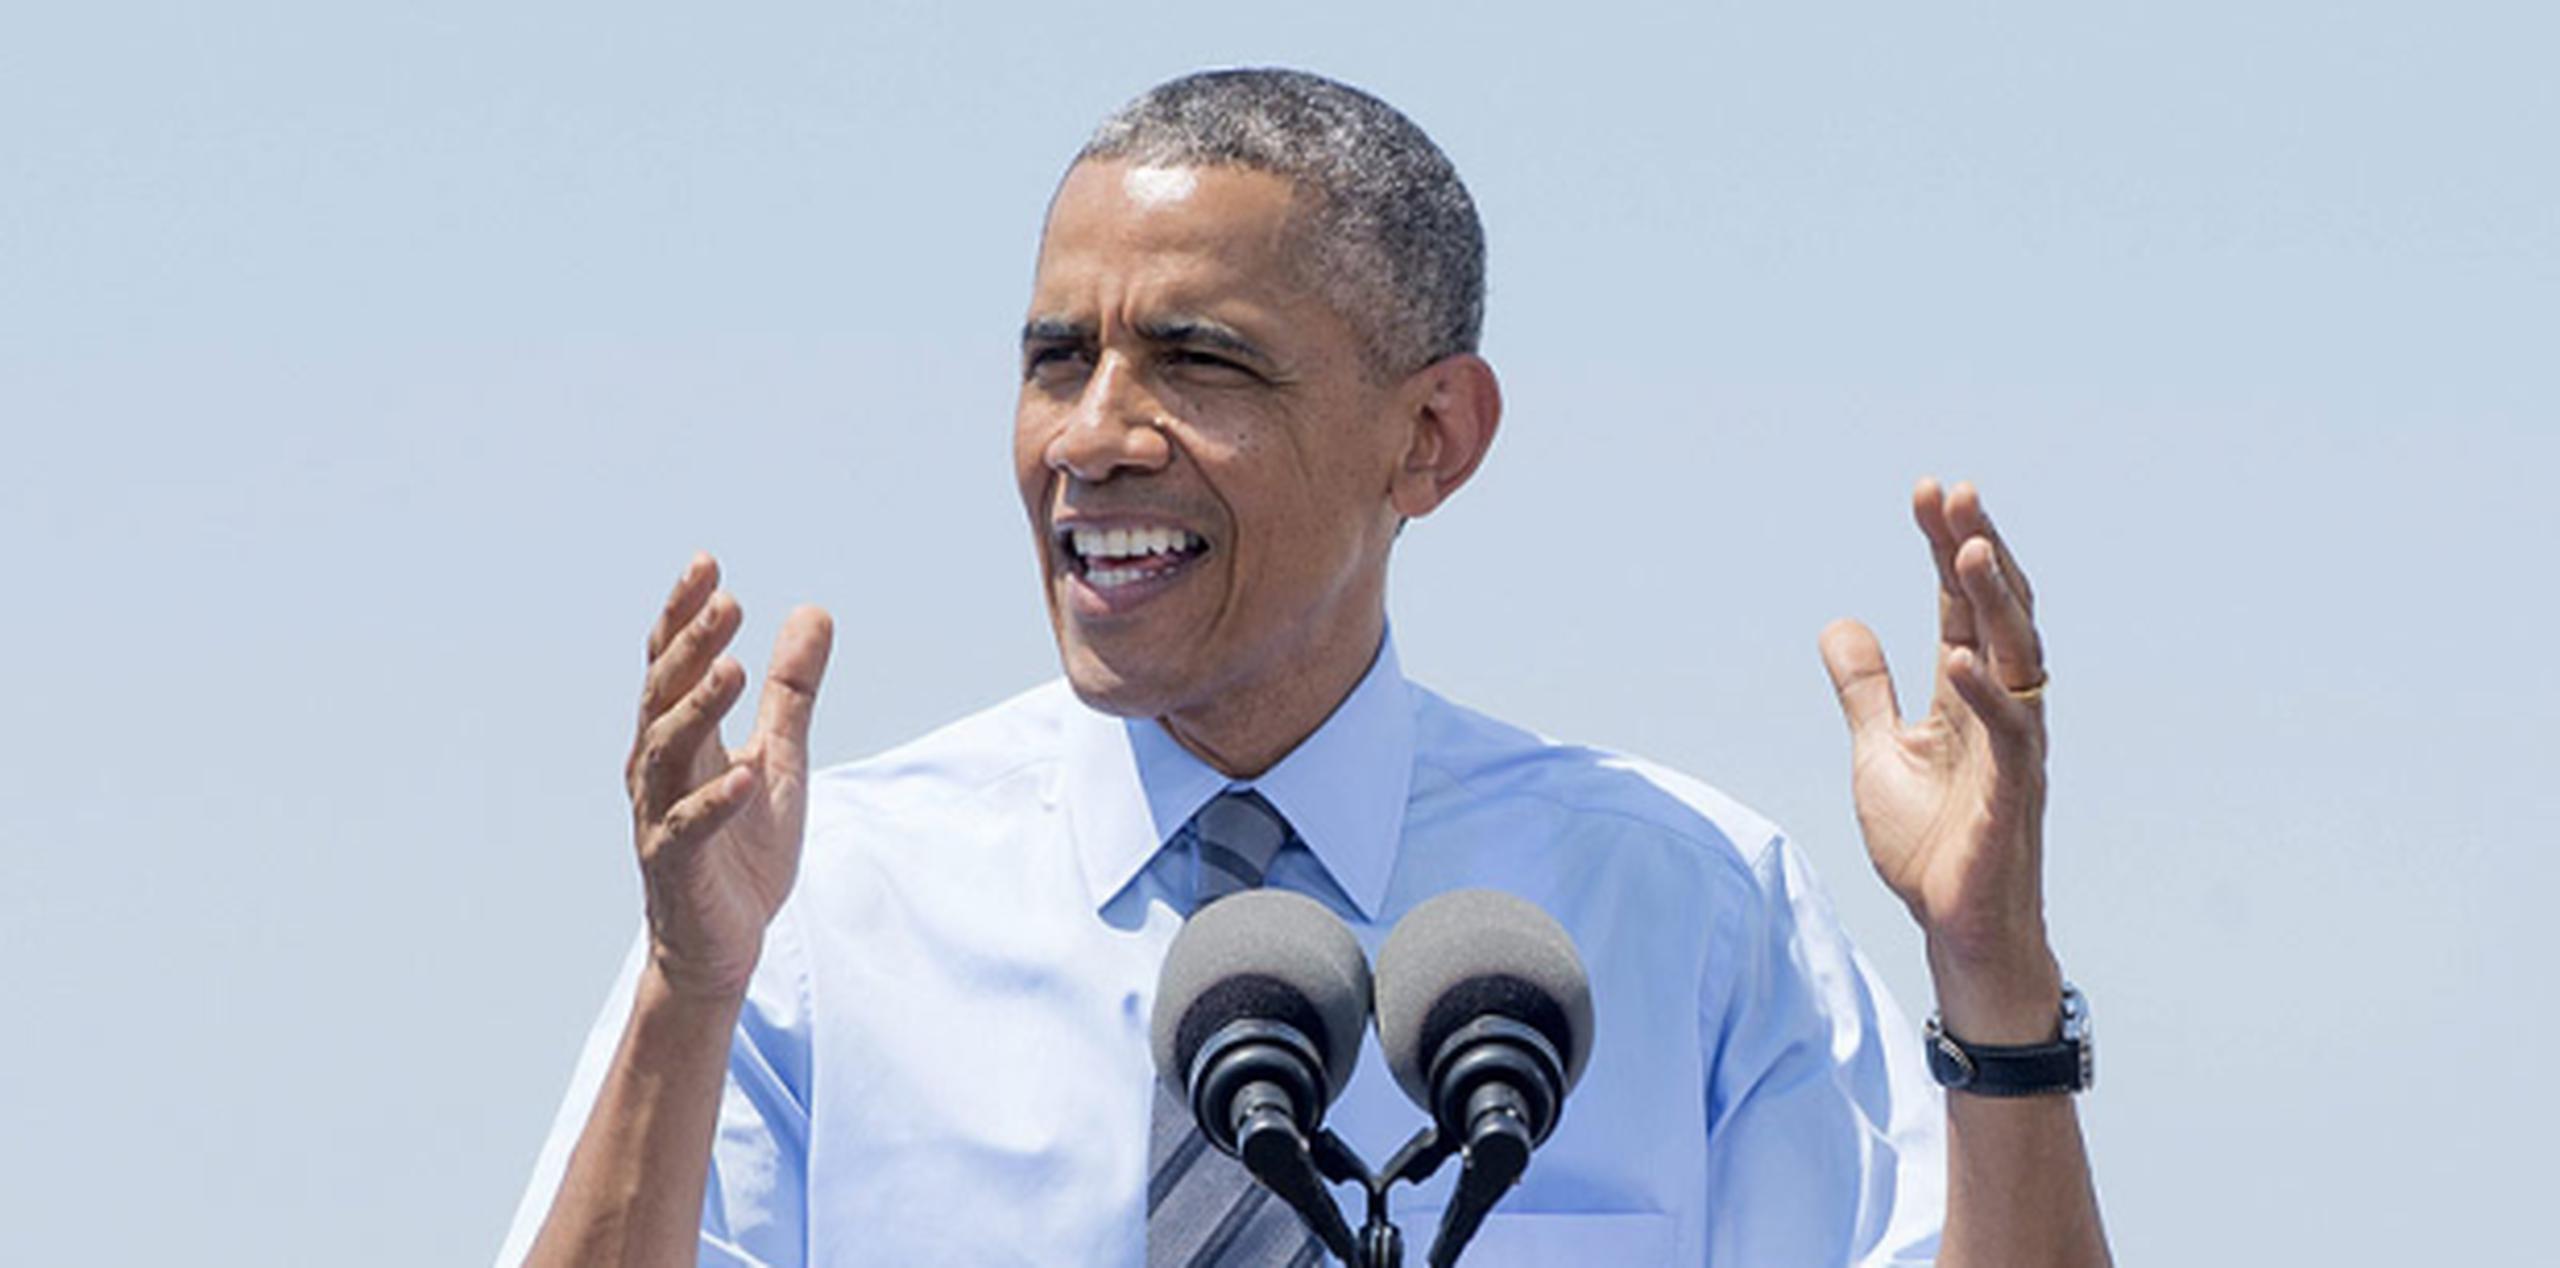 El presindente Barack Obama, calificó de "crítica" la puesta en marcha "tan pronto como sea posible" de una investigación internacional "completa, creíble y sin impedimentos" sobre lo sucedido. (EFE)